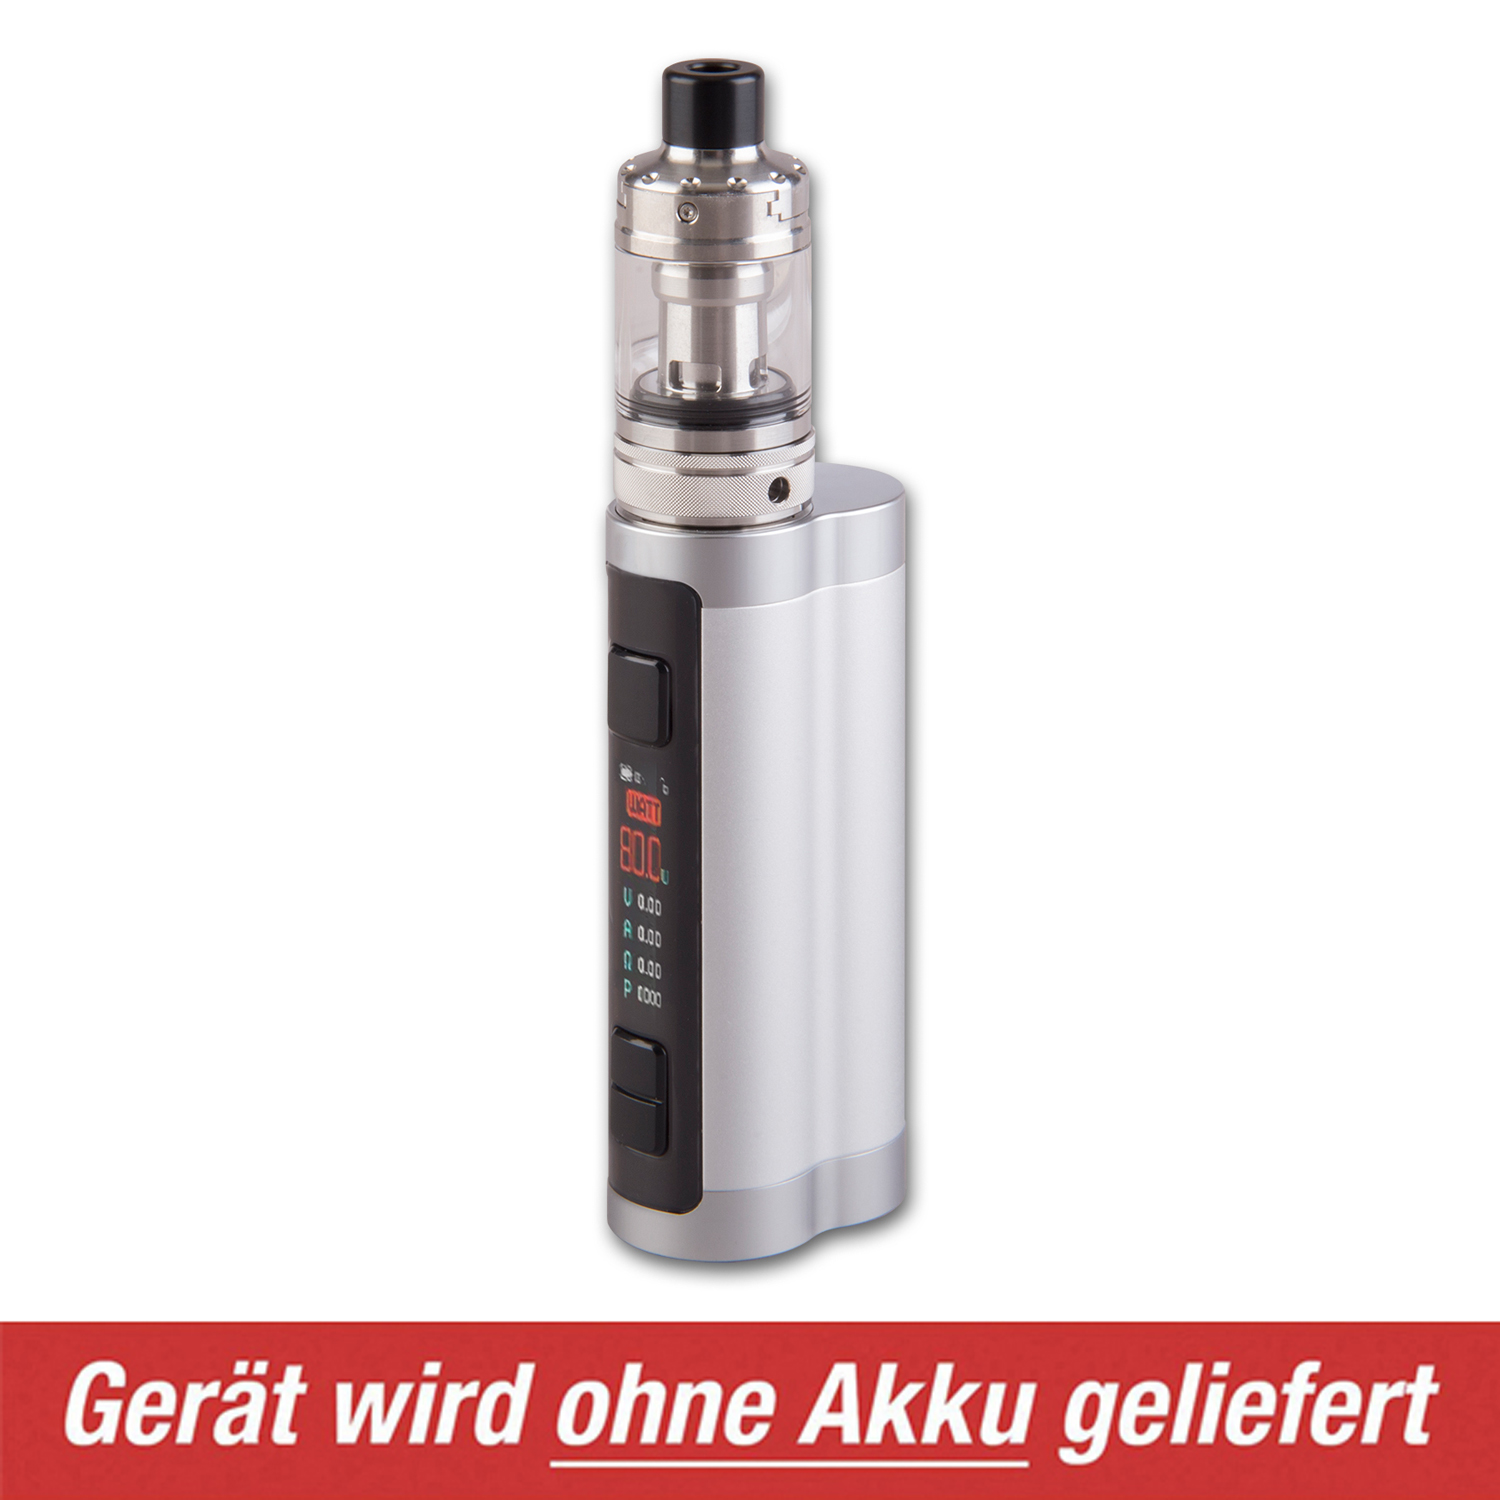 E-Zigarette ASPIRE Zelos X silber 0,1 - 3,5 Ohm